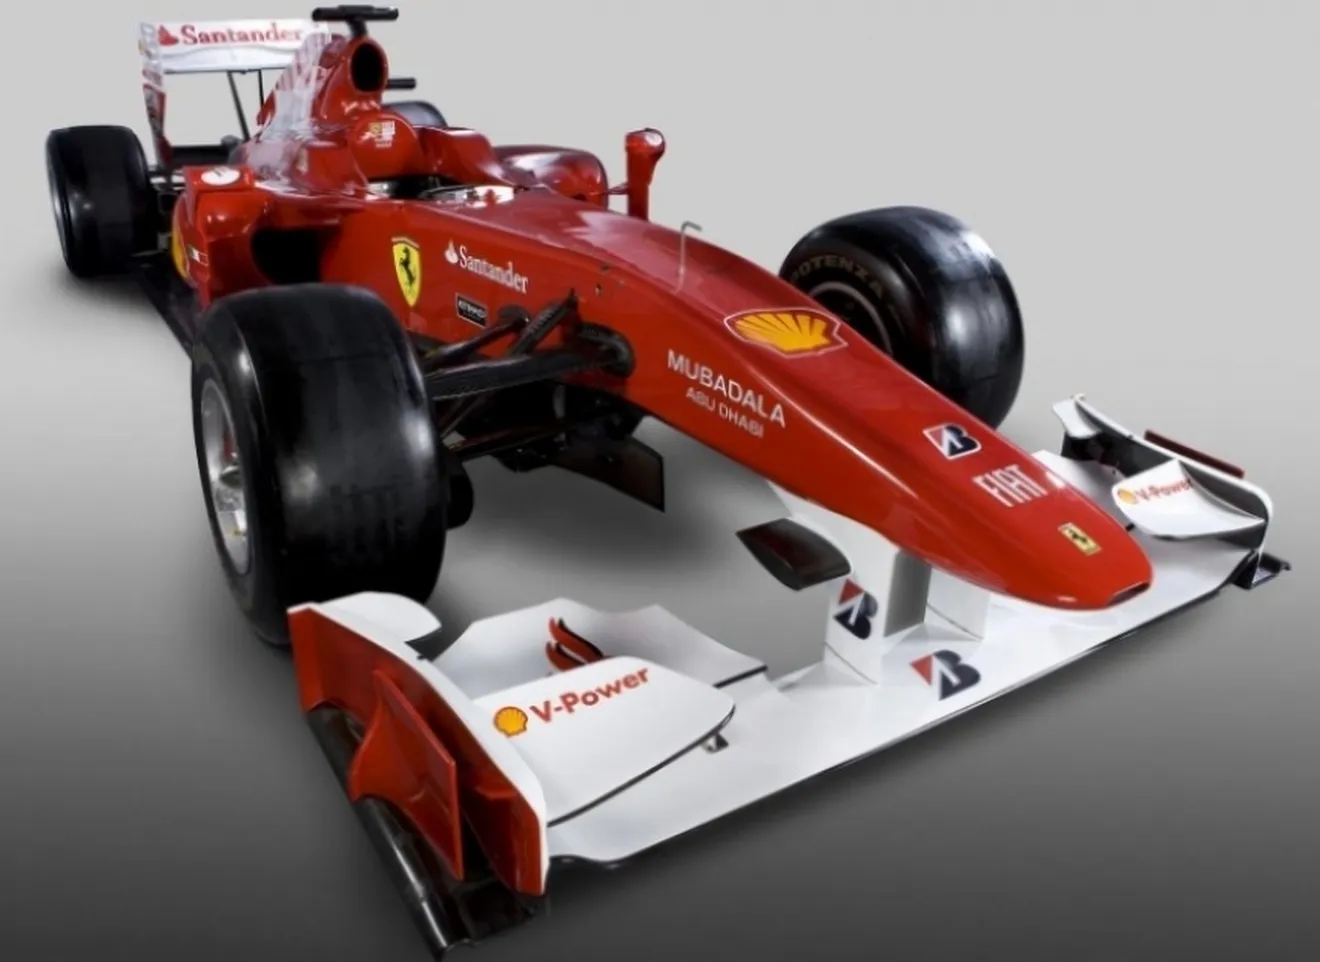 Cancelado el estreno en Fiorano del nuevo Ferrari F10